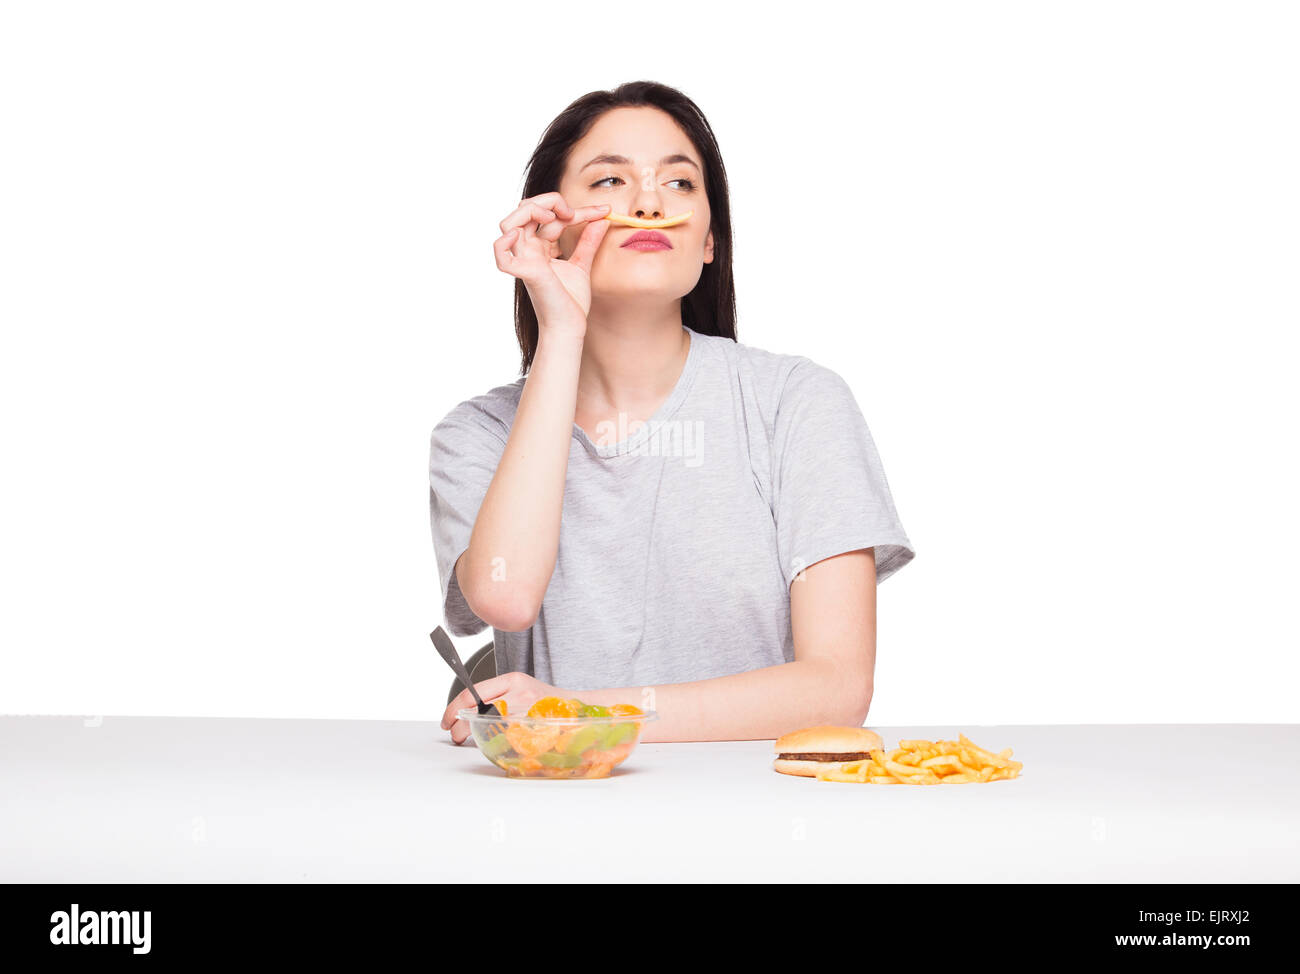 Naturale donna espressiva giocando con patatine fritte, avendo di fronte junk e cibo sano, isolato su bianco Foto Stock